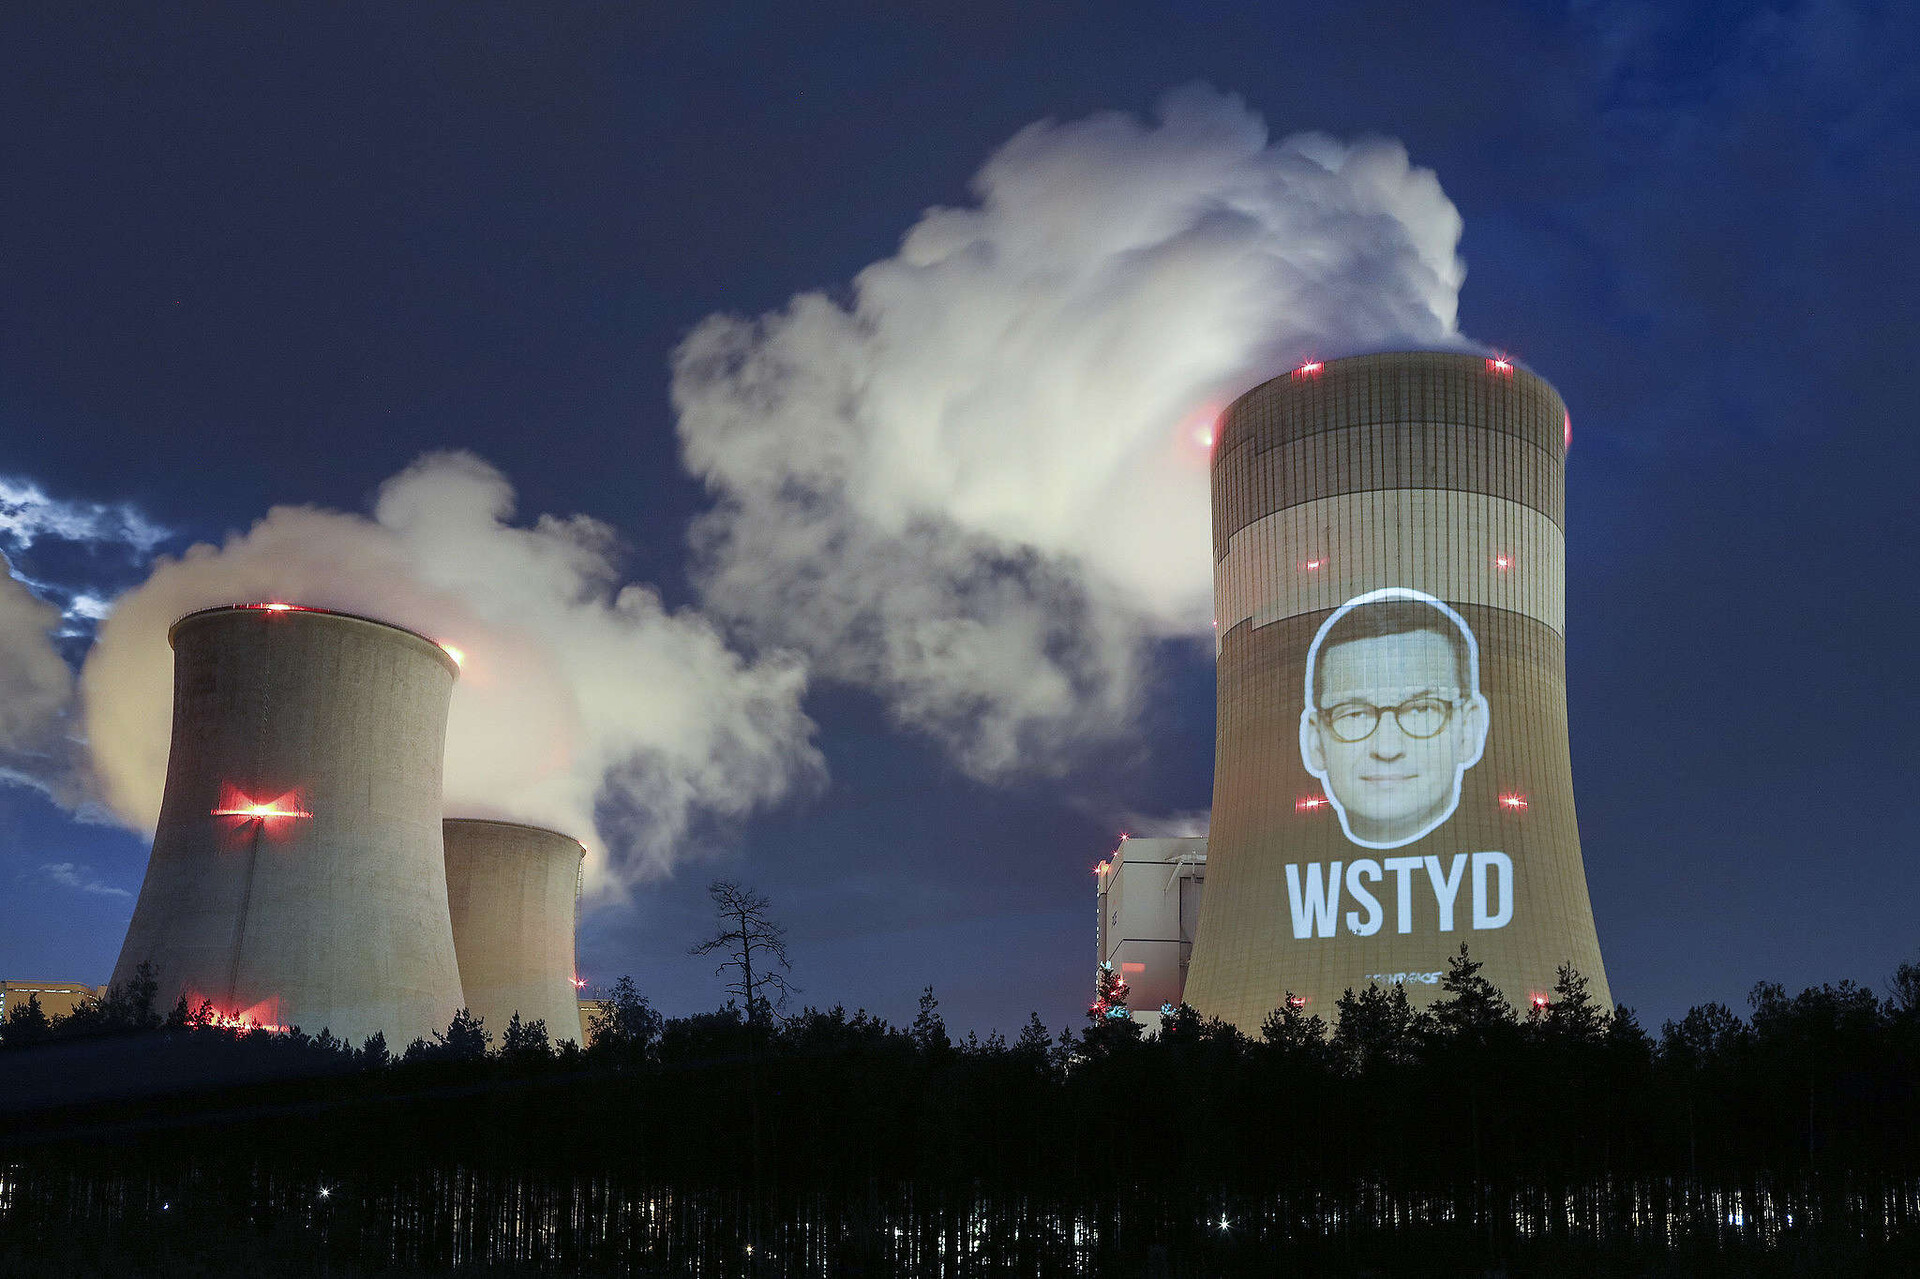  Zdjęcie przedstawia dymiące kominy elektrowni Bełchatów. Na jednym z kominów za pomocą projektora została wyświetlona twarz Mateusza Morawieckiego, a pod nią napis „wstyd” zapisany dużymi literami. 